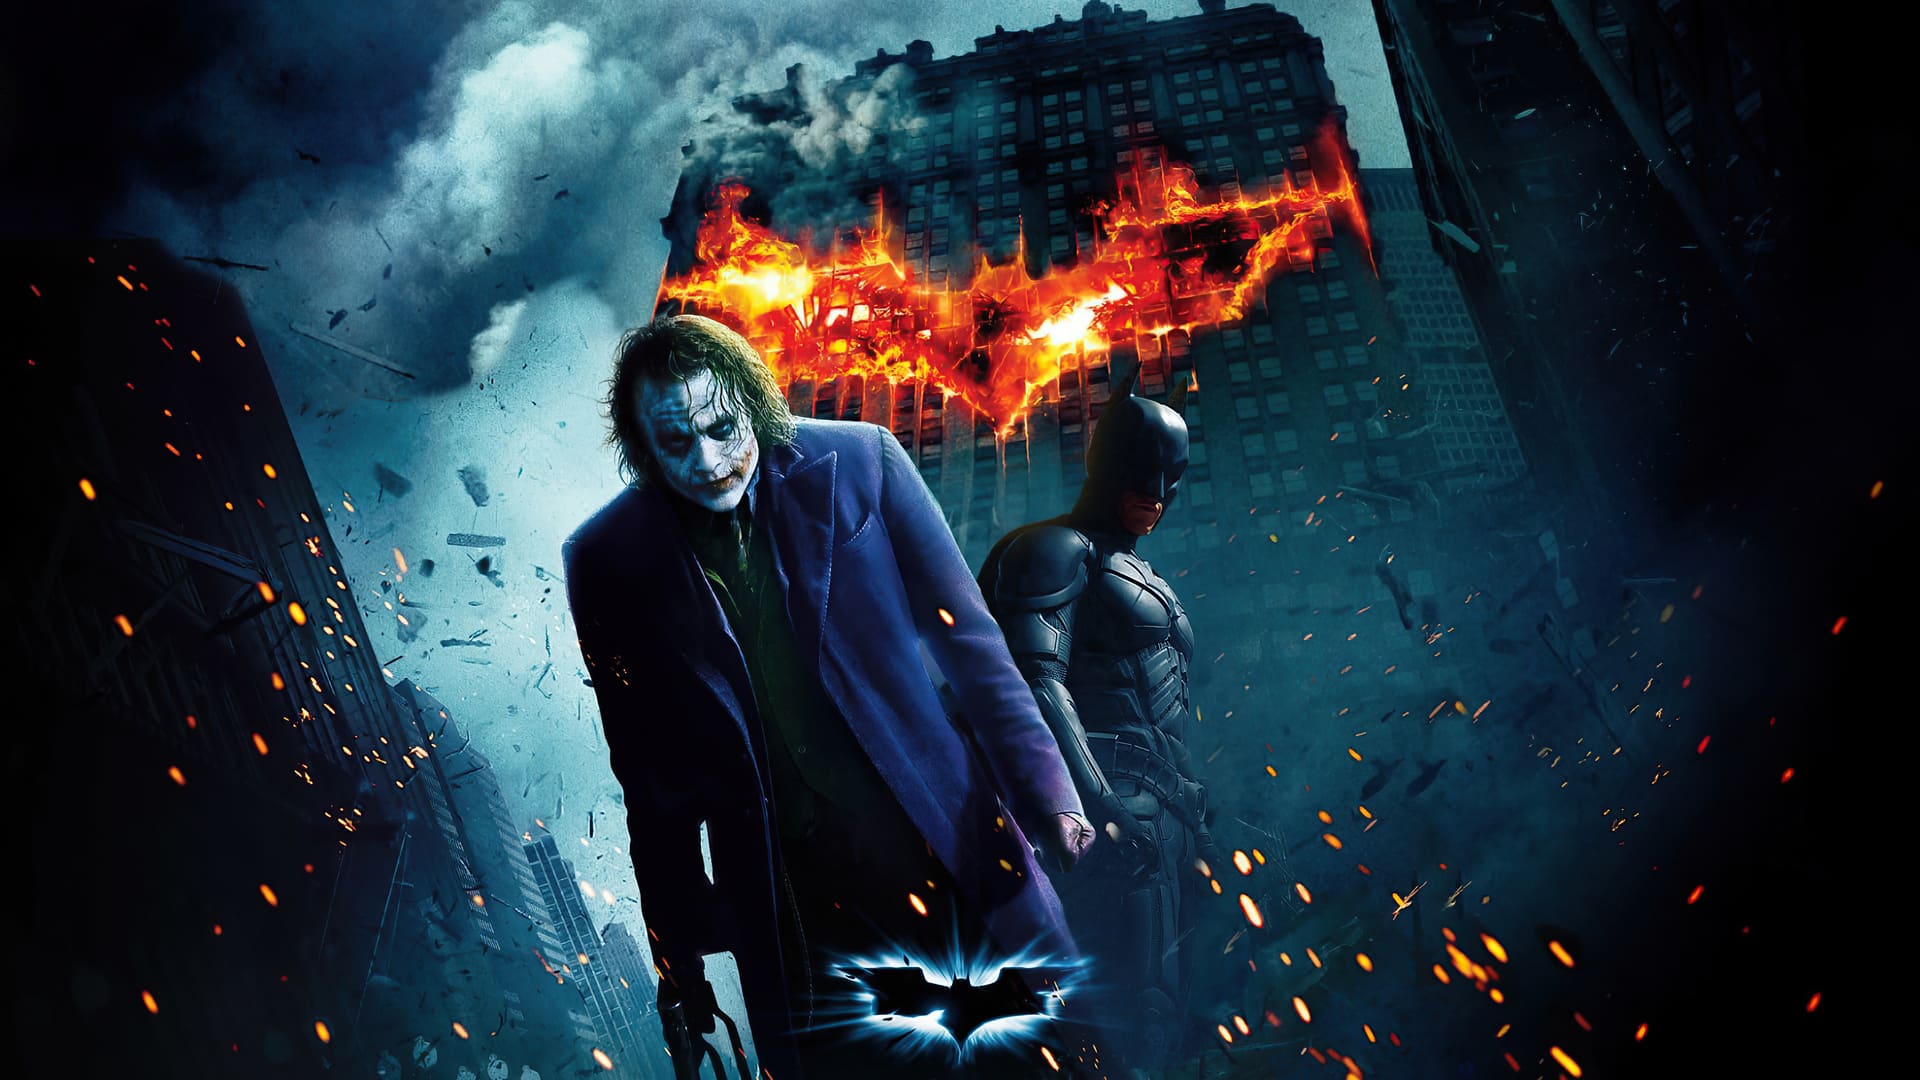 Dark Knight Joker In 4K Ultra Hd Wallpapers